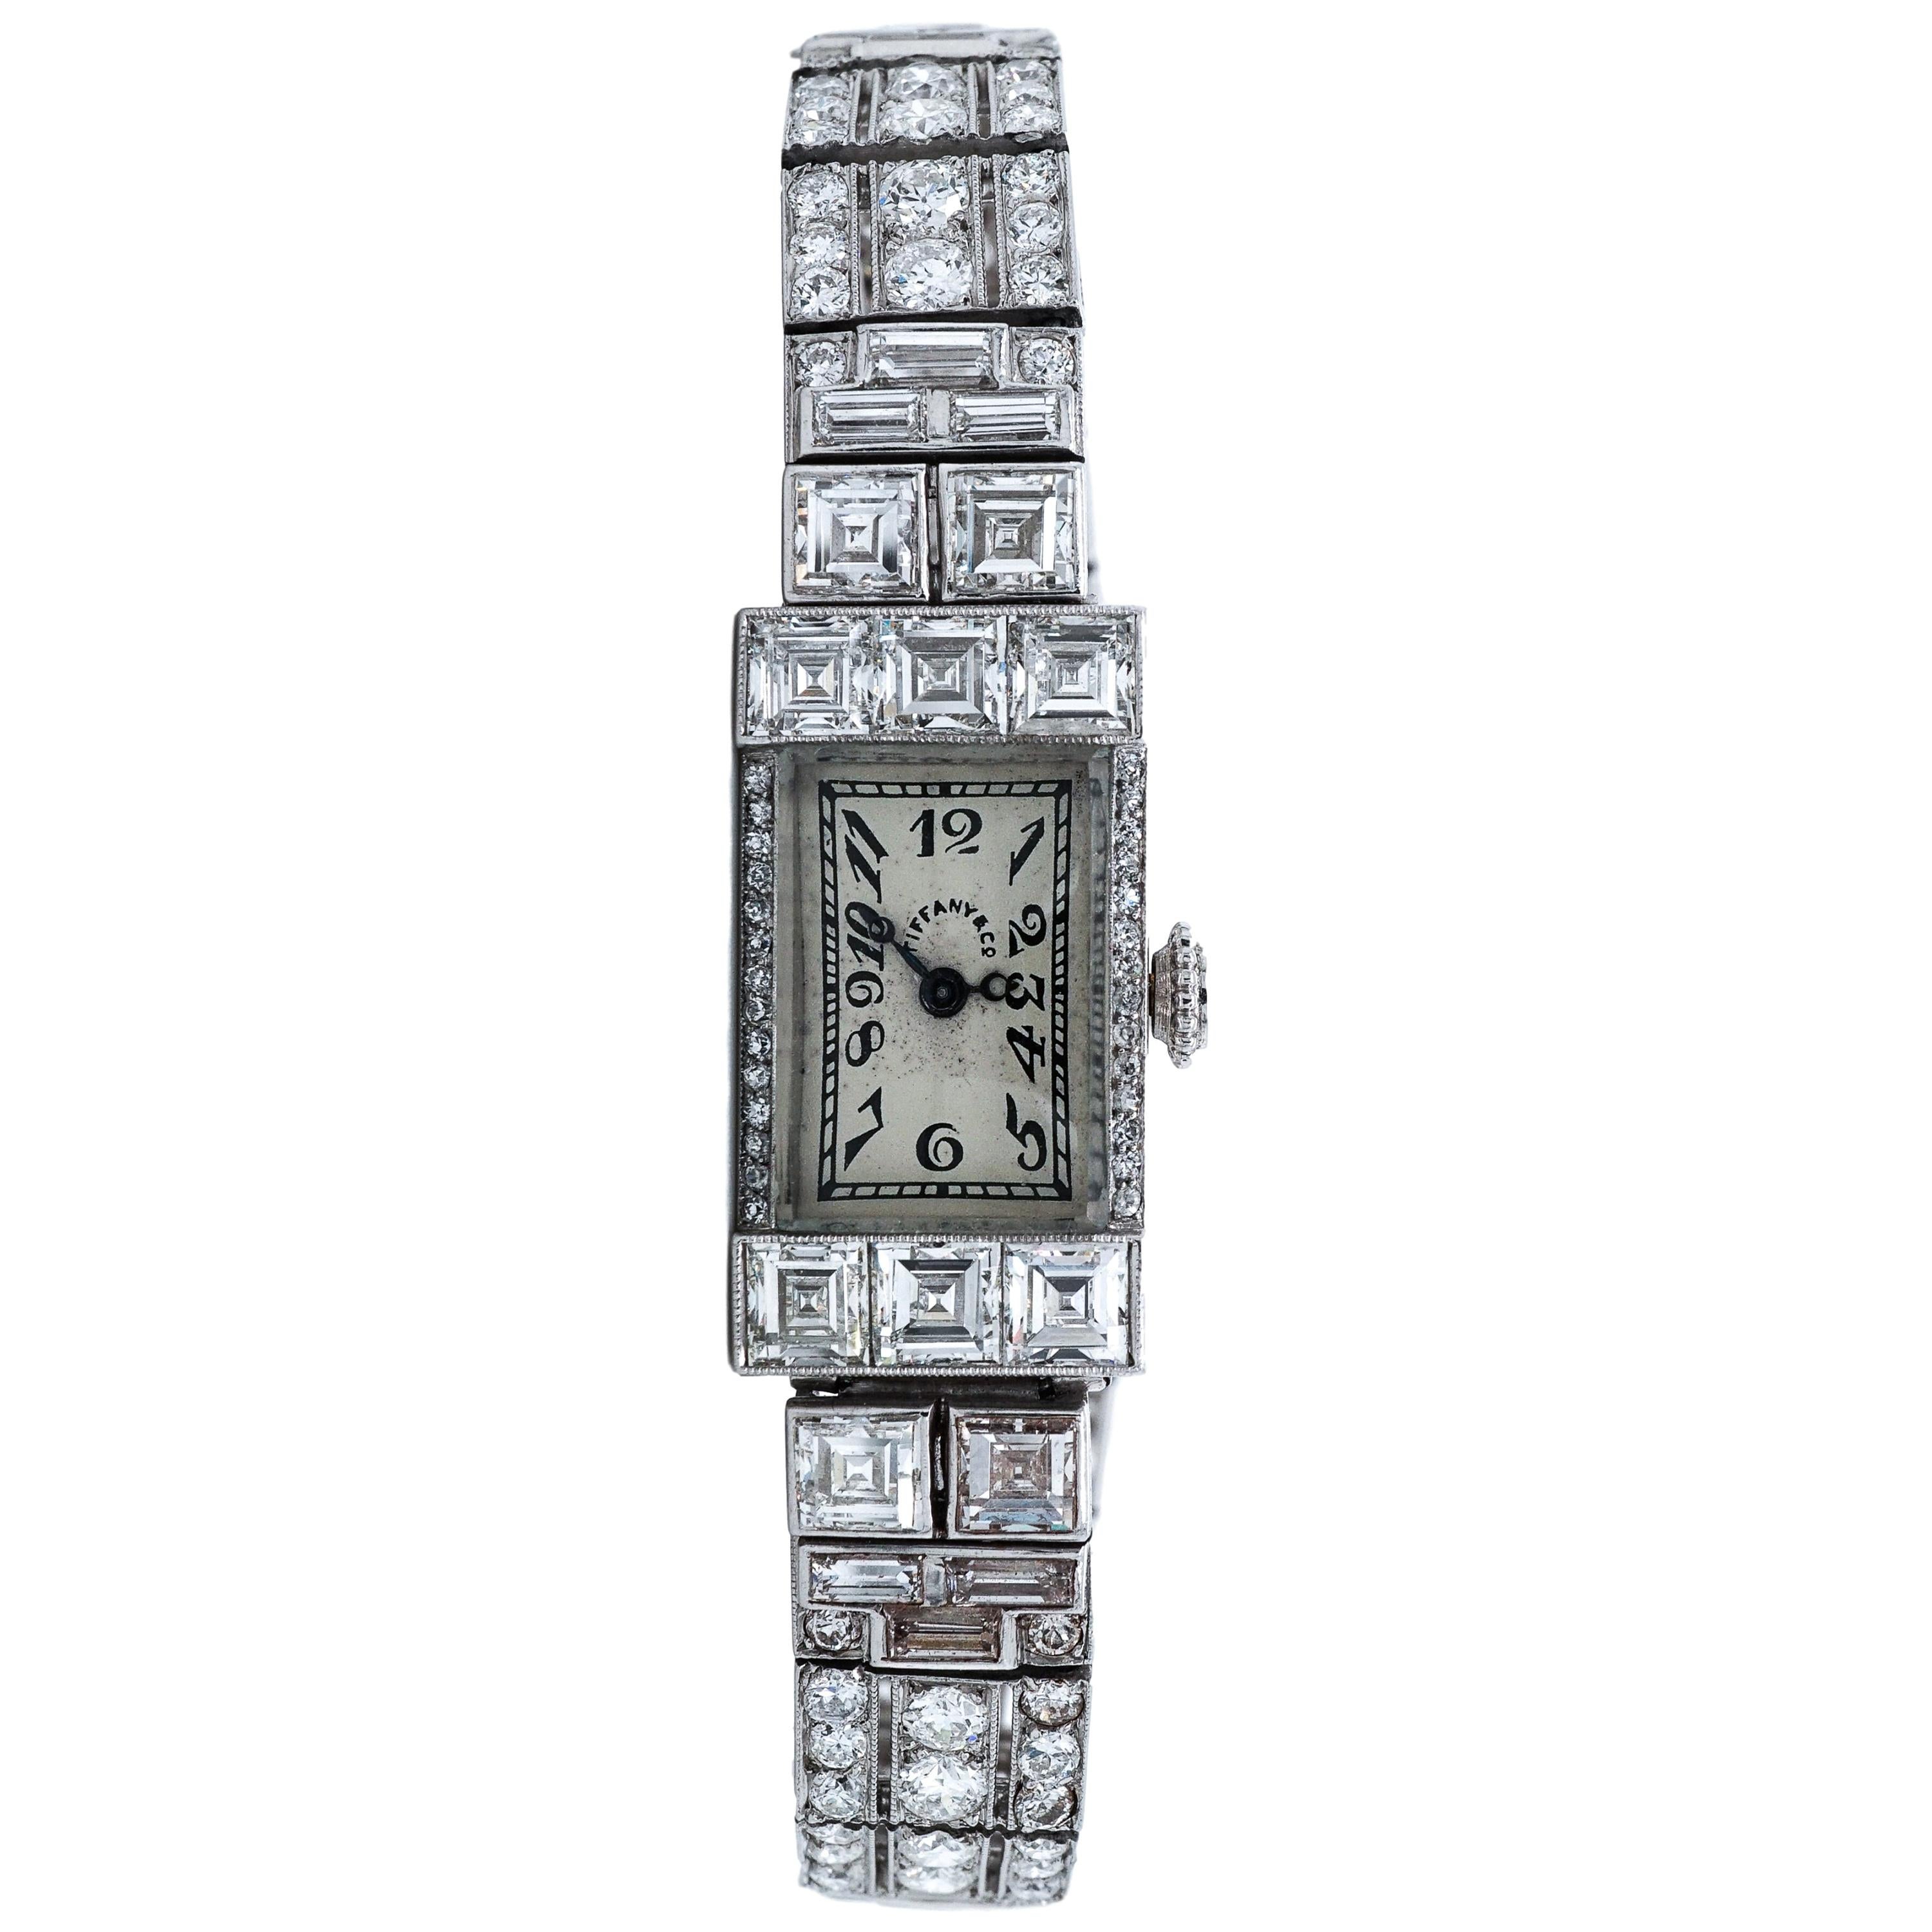 Tiffany & Co. Art Deco Wristwatch